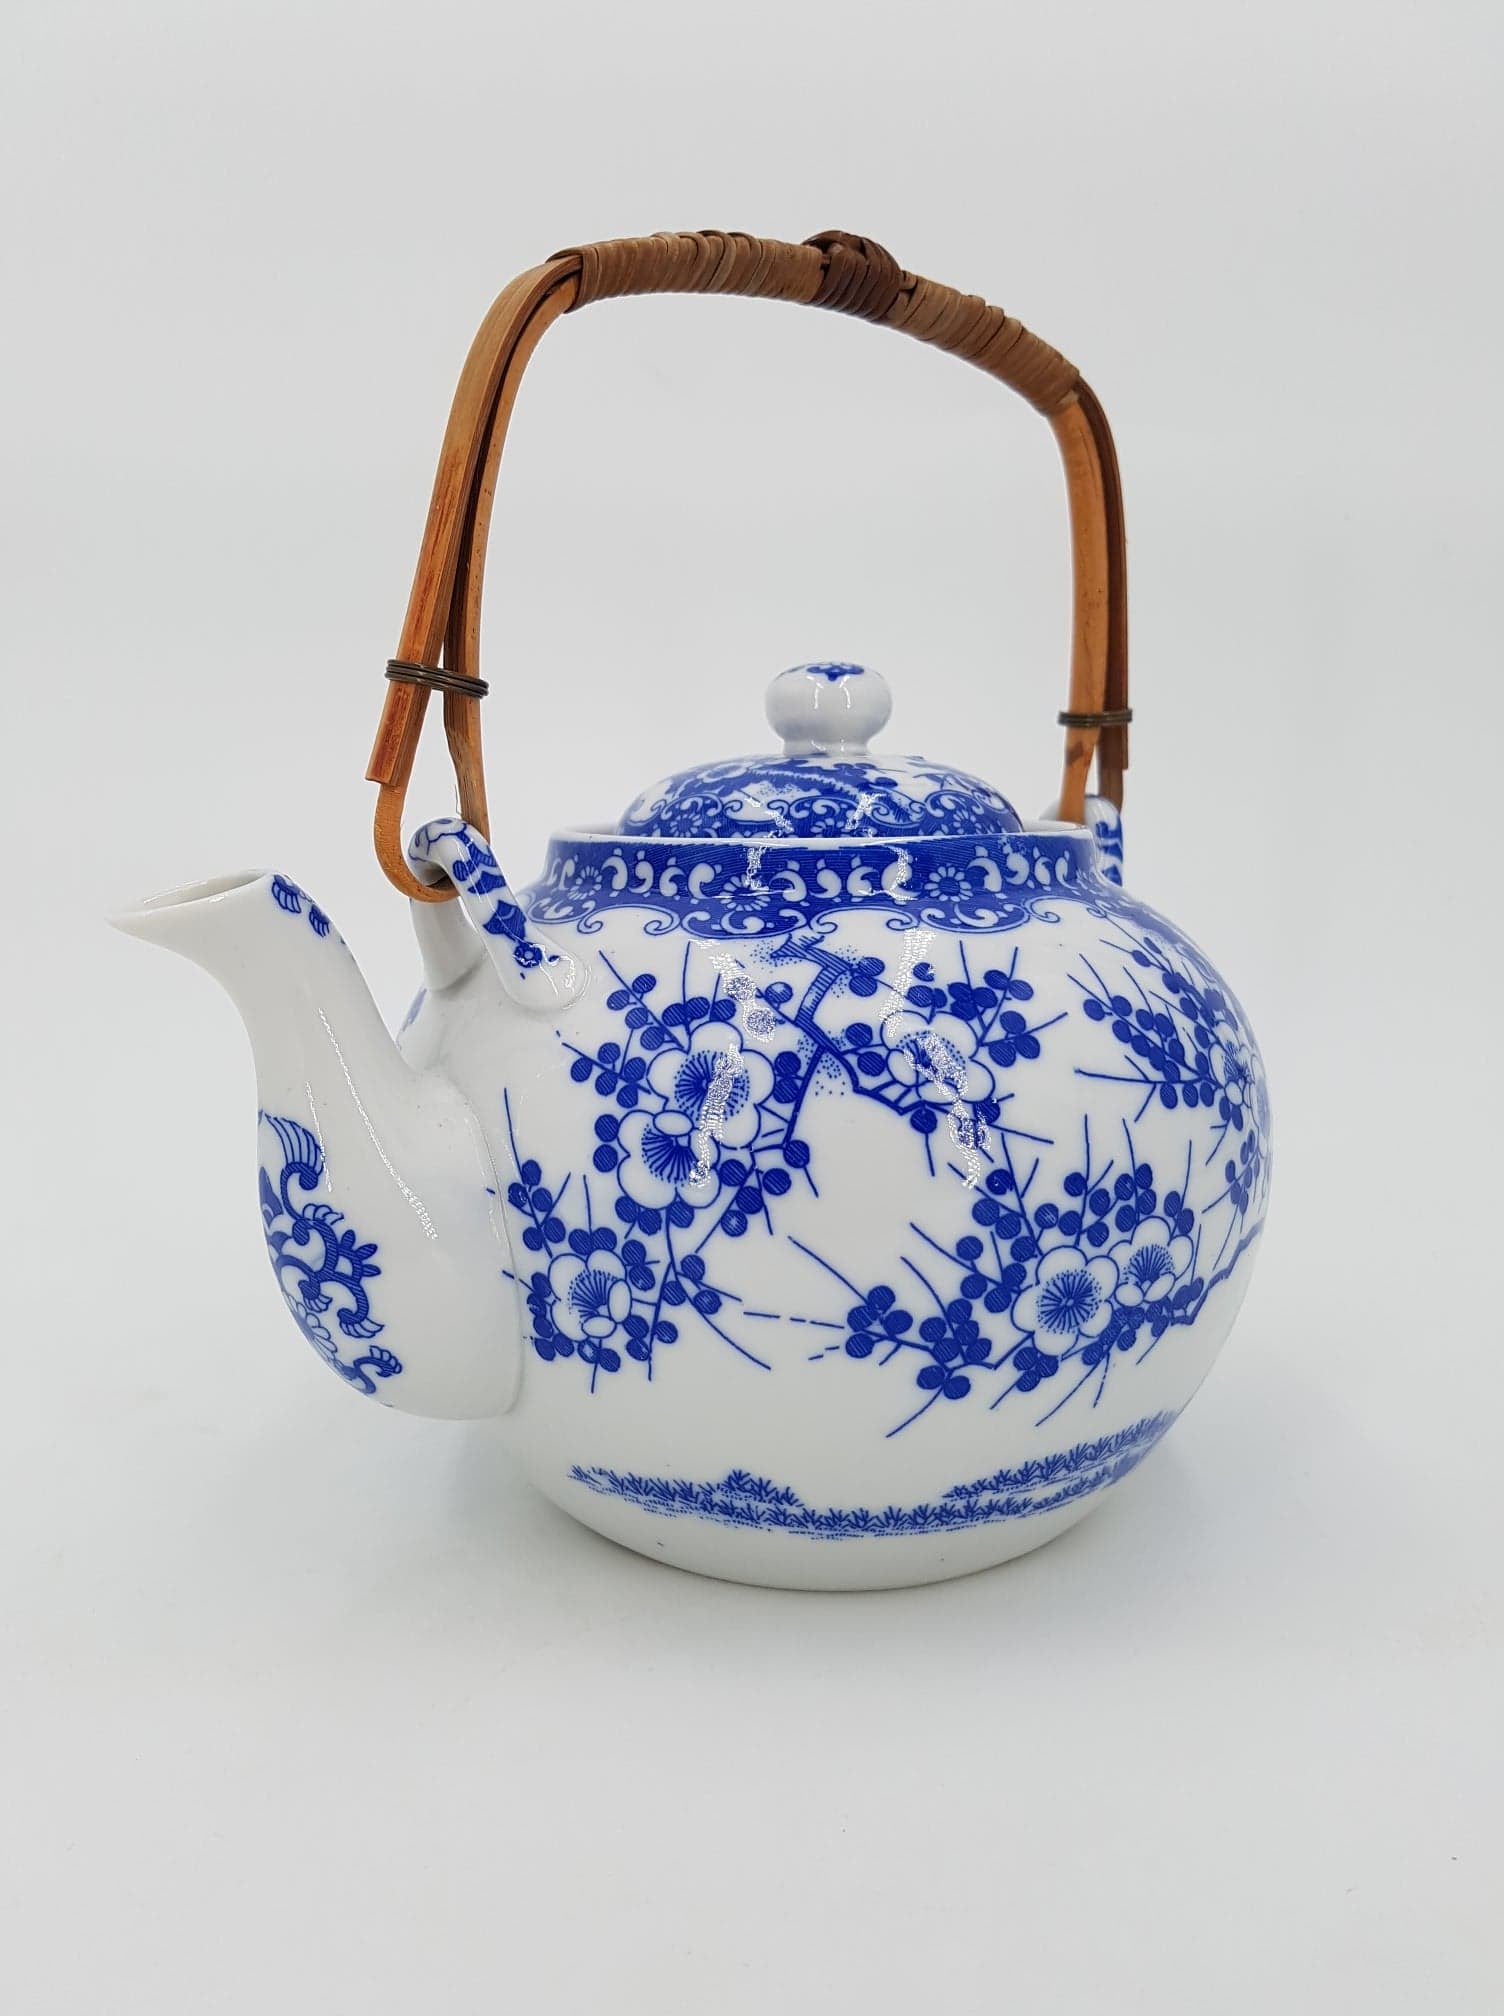 Ancienne théière japonaise en porcelaine – La Brocantique